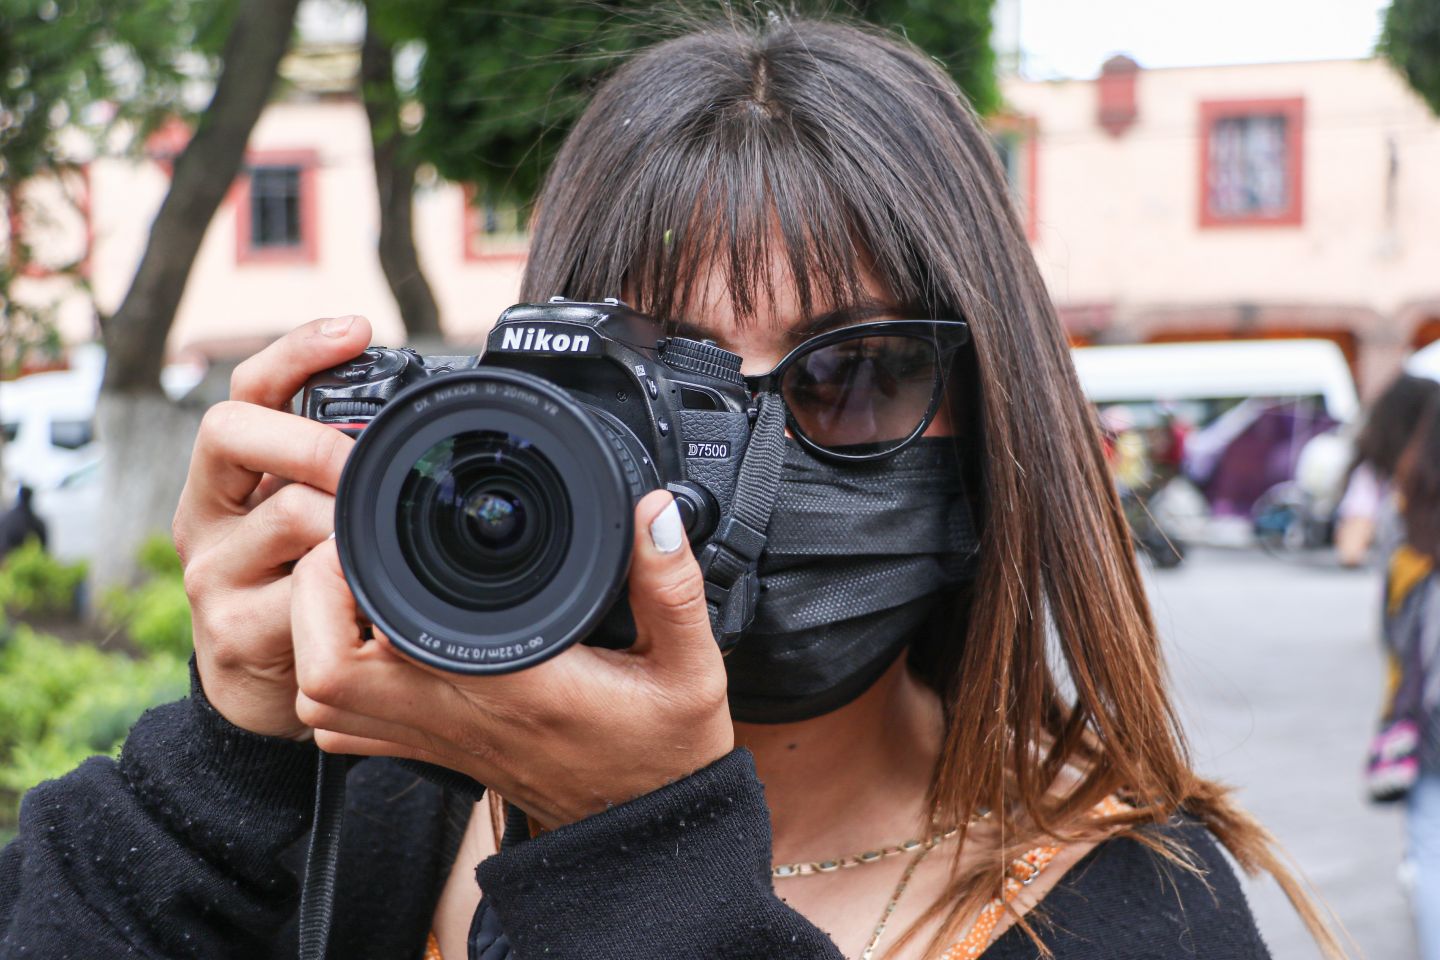 
Chimalhuacán emite convocatoria para concurso de fotografía con motivo del Día de la Juventud 2021
